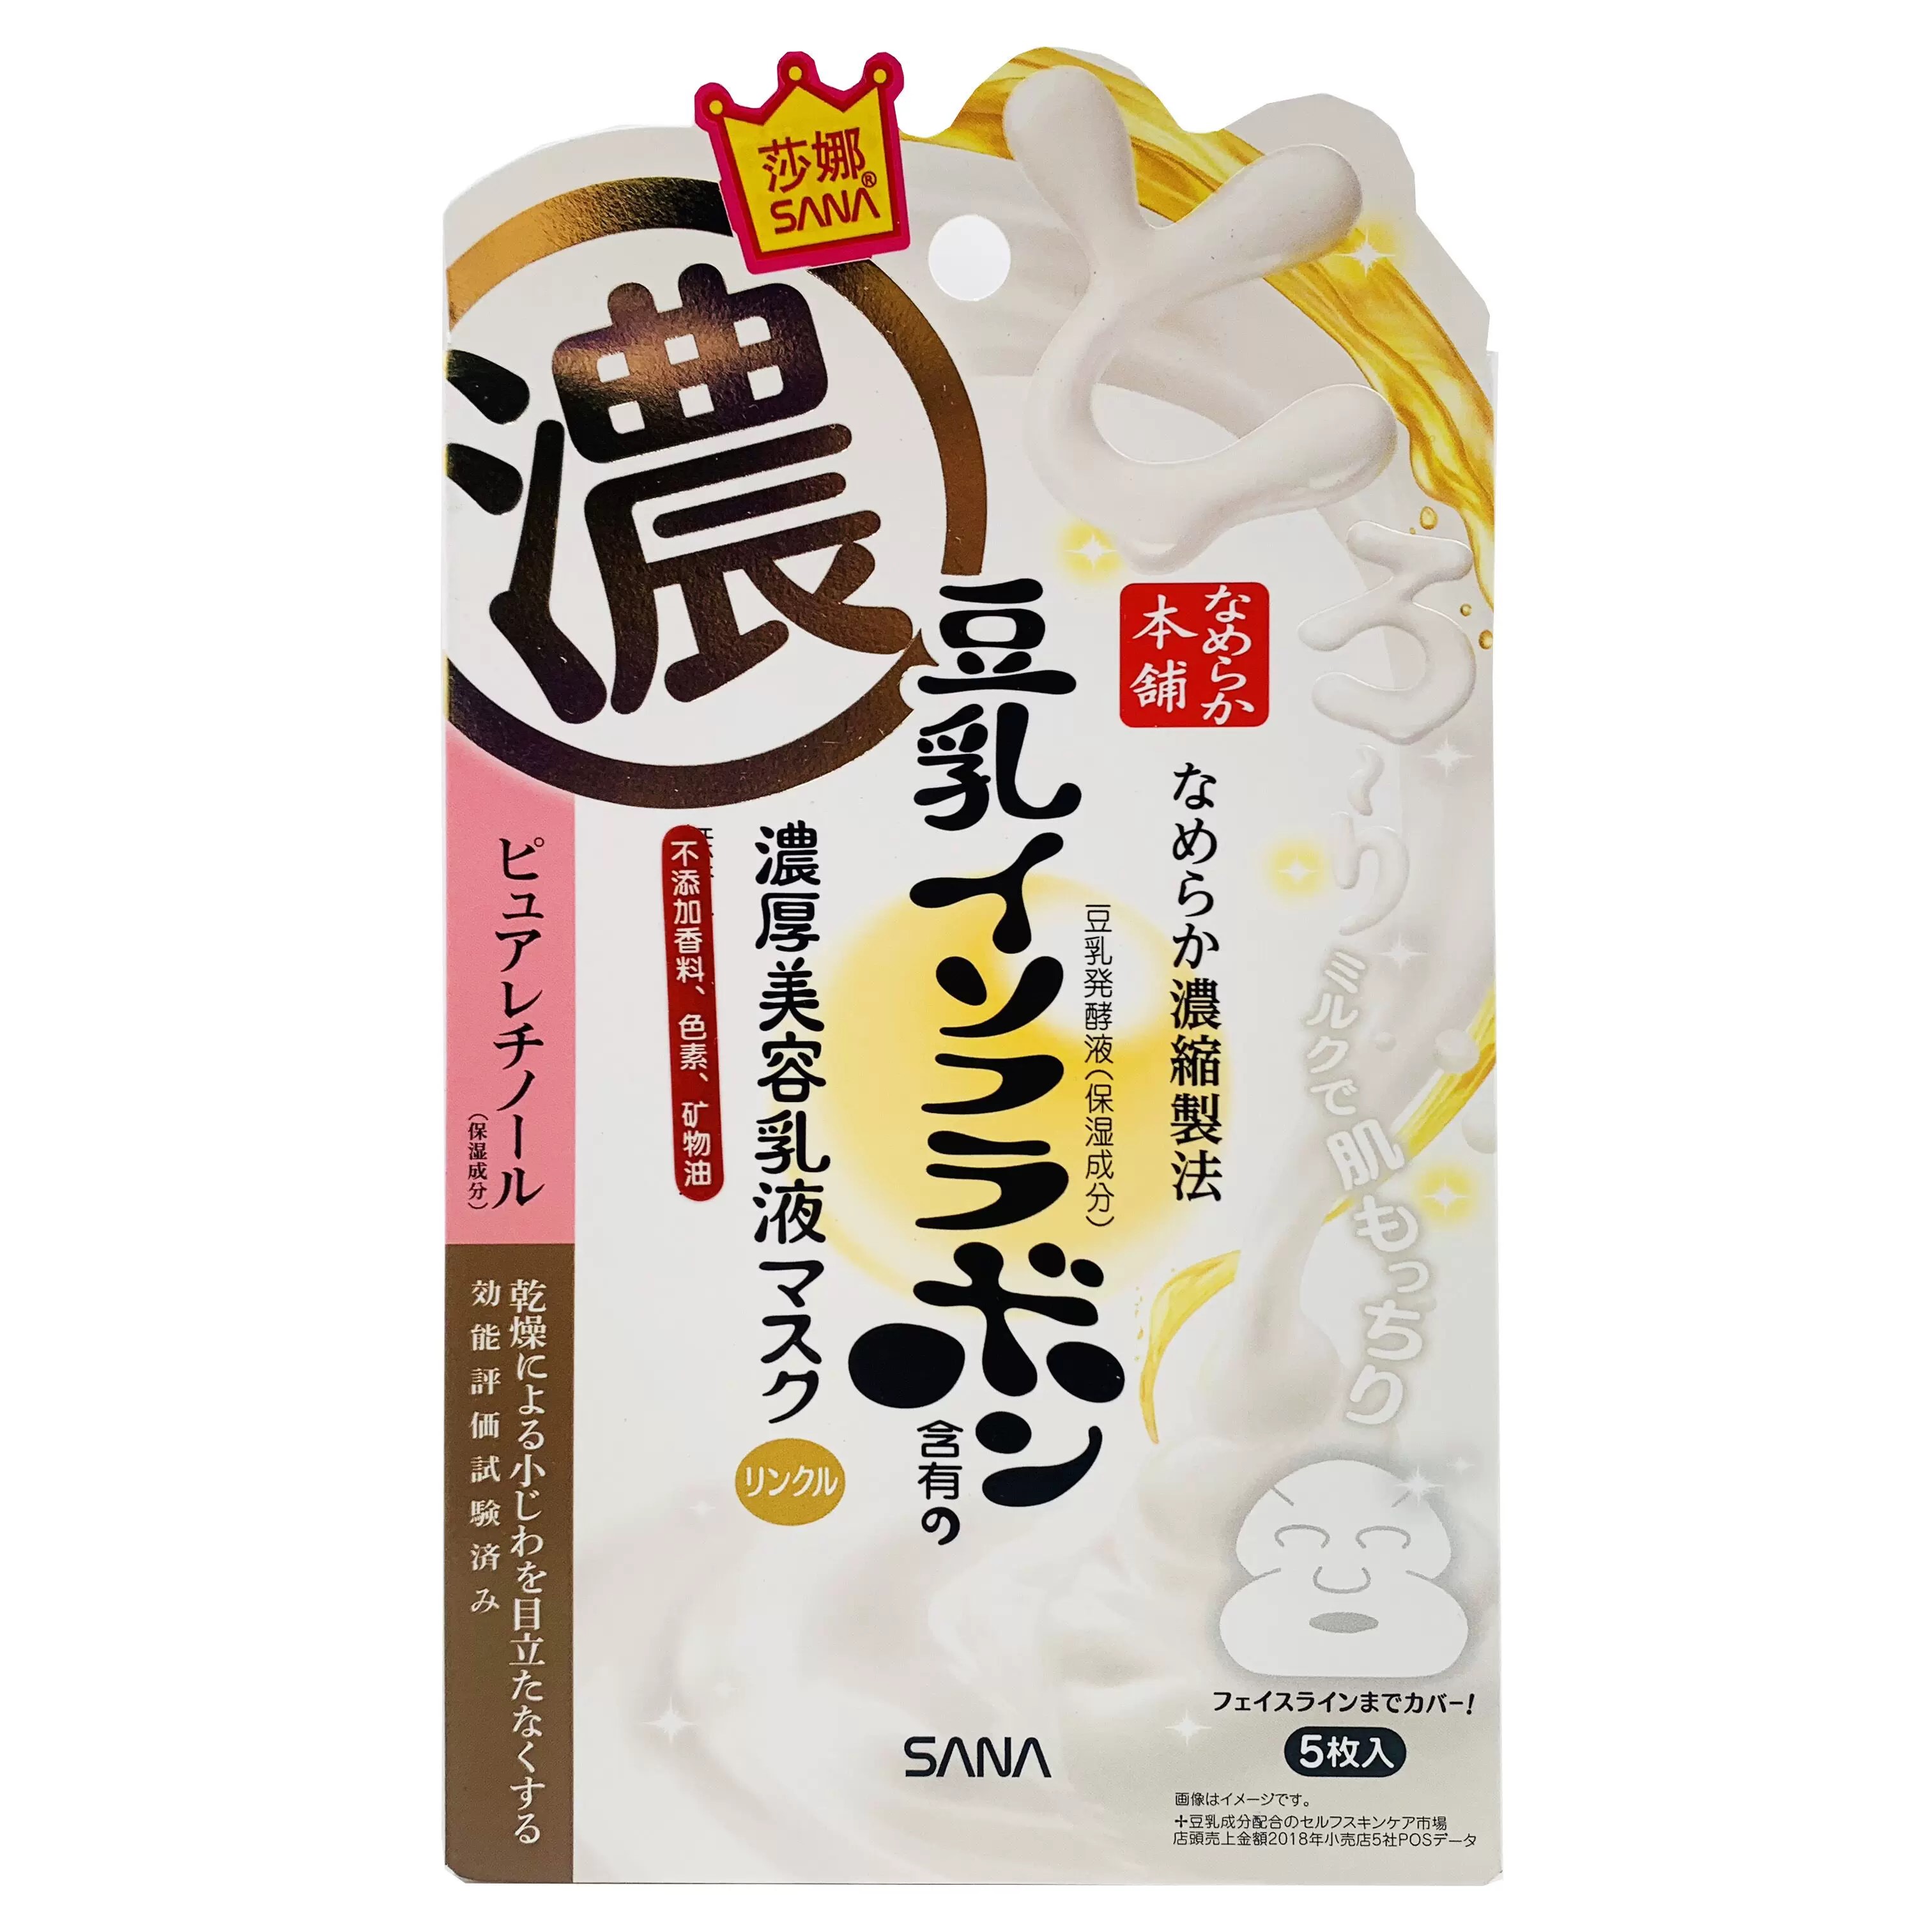 日本SANA | 美容精华面膜 | 25g美容液 | 5枚 | 大赏获奖第一名 | Smooth Honpo Wrinkle Gel Milk Fluid Mask, Pack of 5 x 0.9 oz (